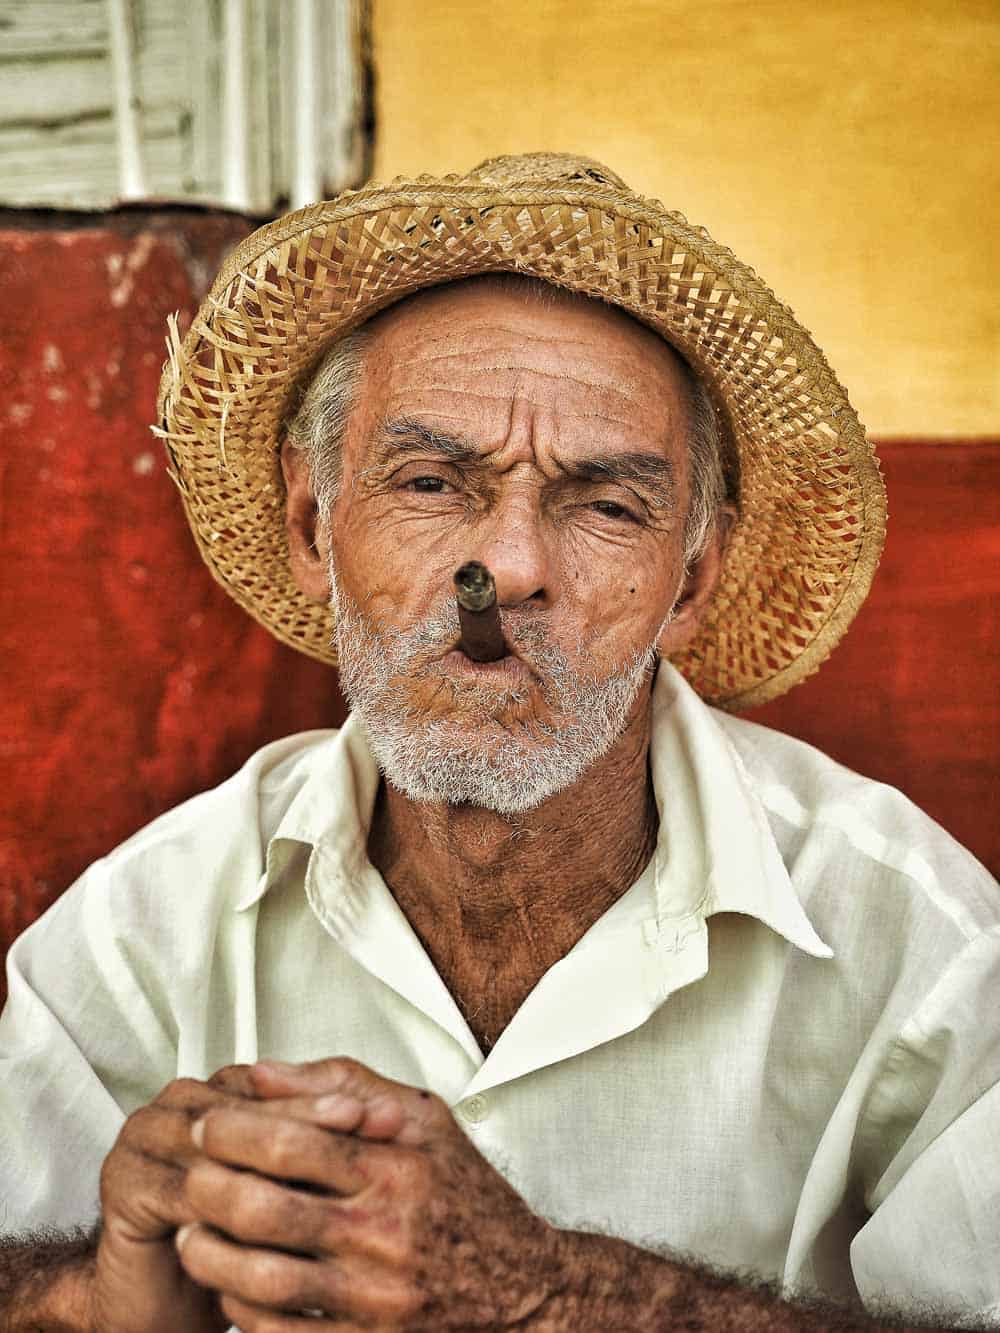 Cubans loves cigar